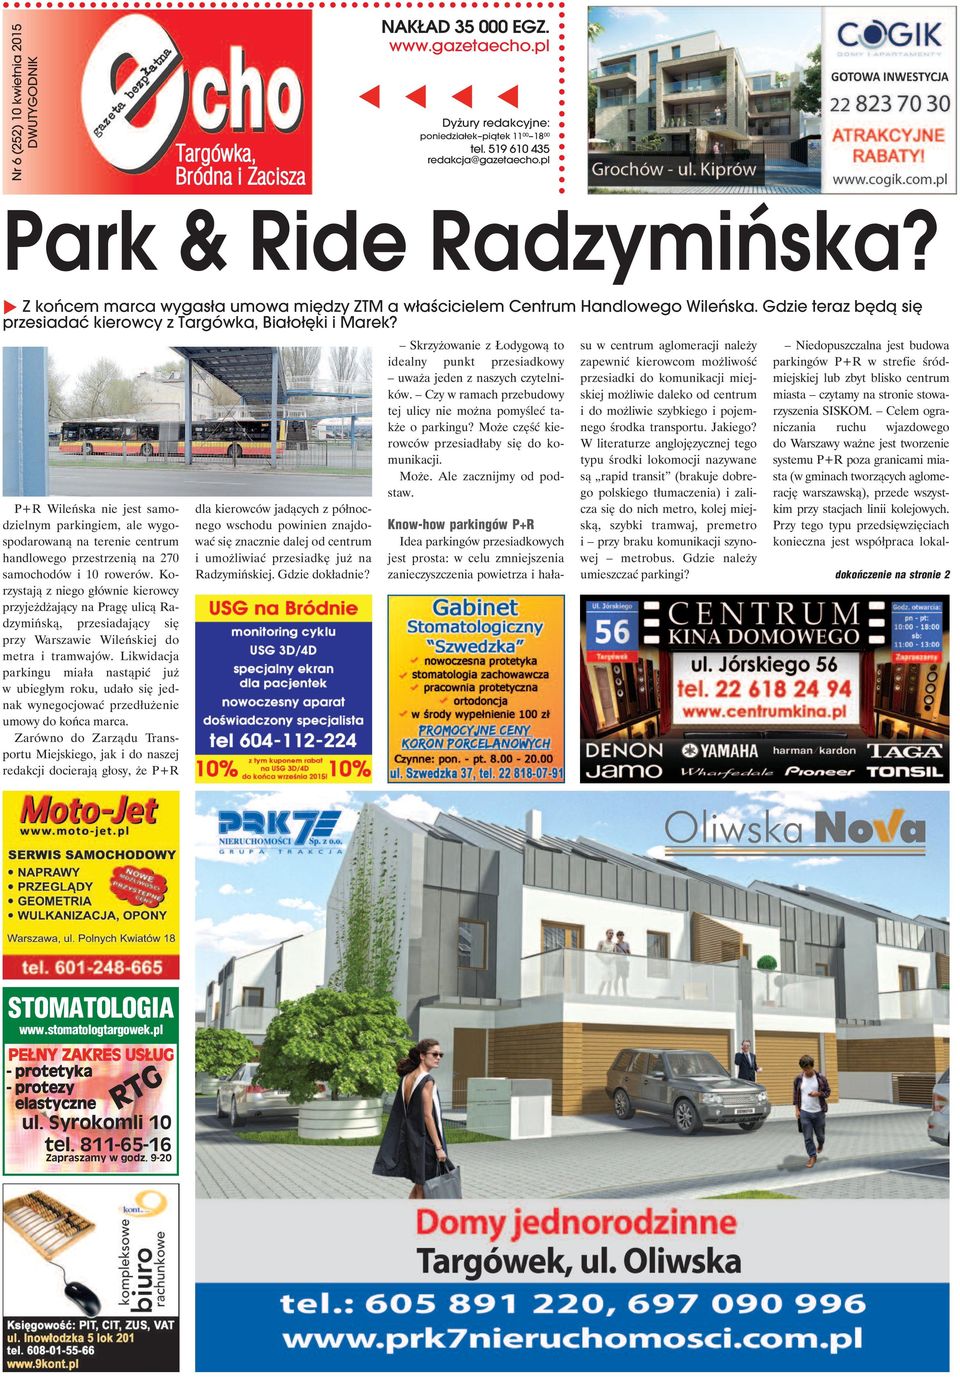 P+R Wileńska nie jest samodzielnym parkingiem, ale wygospodarowaną na terenie centrum handlowego przestrzenią na 270 samochodów i 10 rowerów.